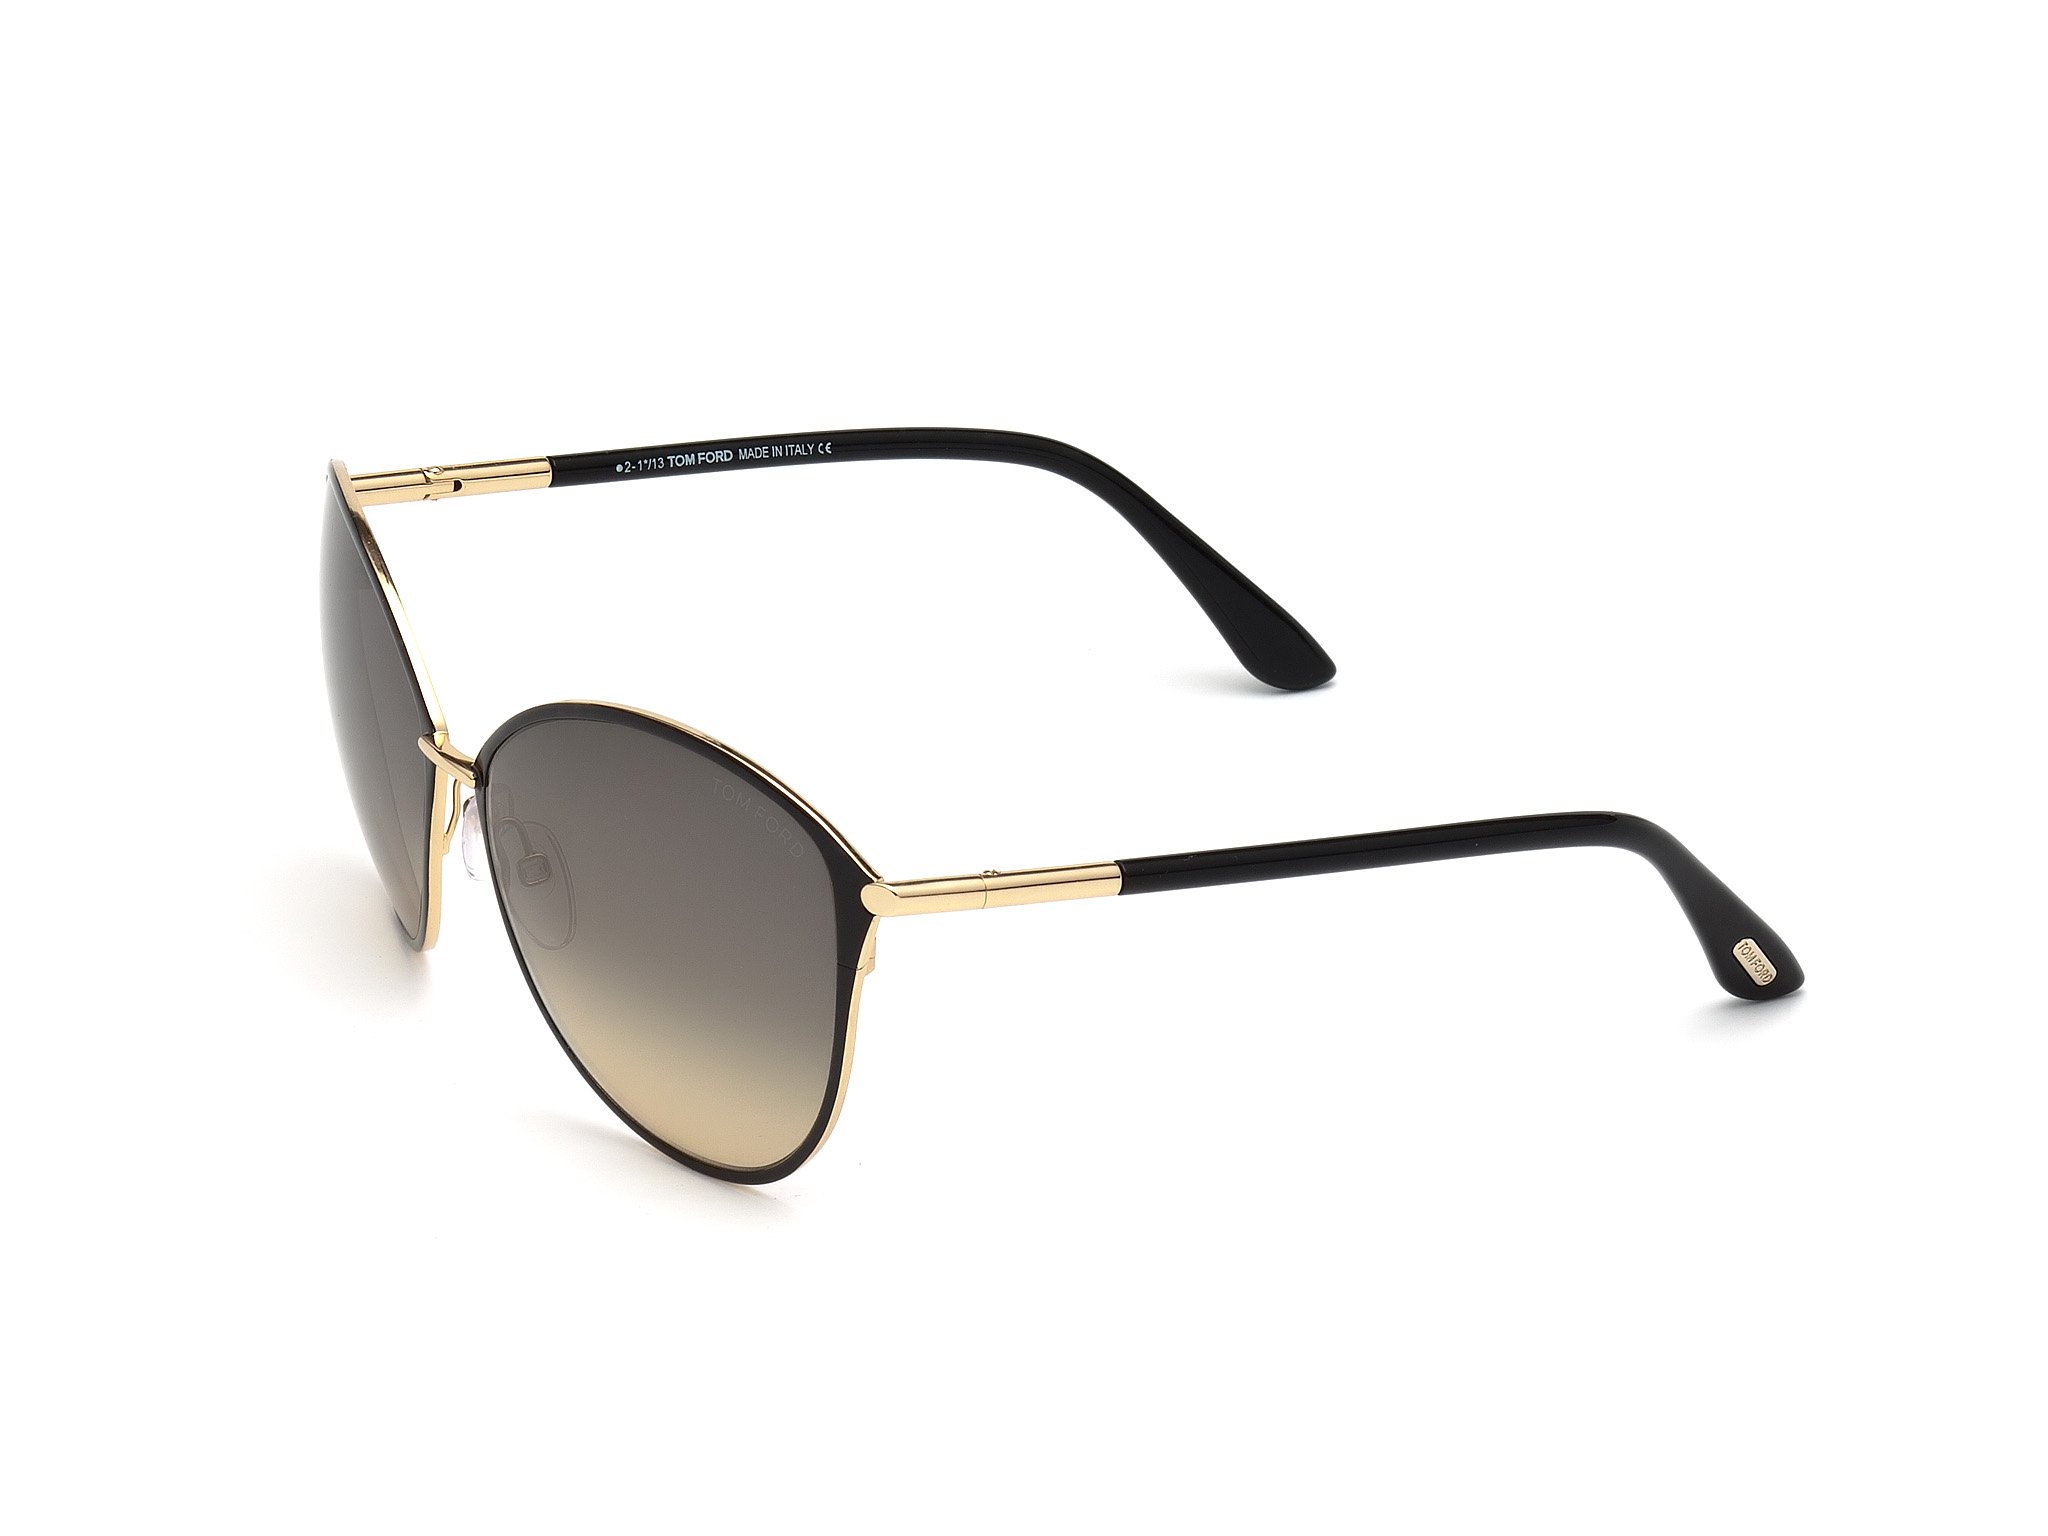 Das Bild zeigt die Sonnenbrille FT0320 28B von der Marke Tom Ford in schwarz/gold.